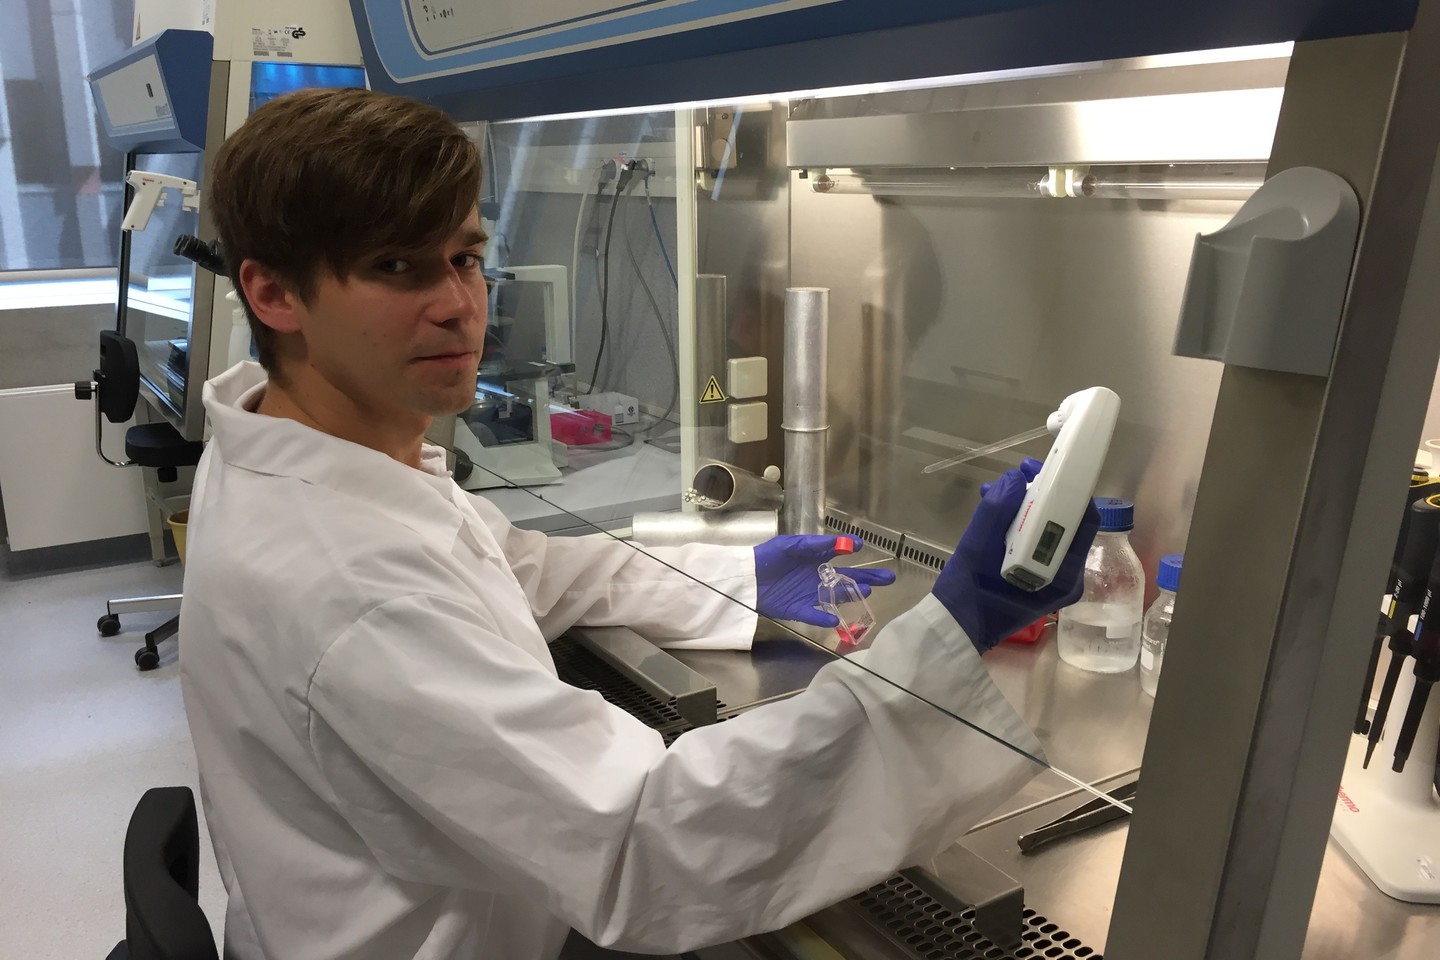  Jaunasis mokslininkas kuria bioaktyvų karkasą audinių inžinerijai. Tai toks darinys, kuris turi norimo transplantuoti audinio ar organo mechanines ir chemines savybes.<br> Asmeninio archyvo nuotr.